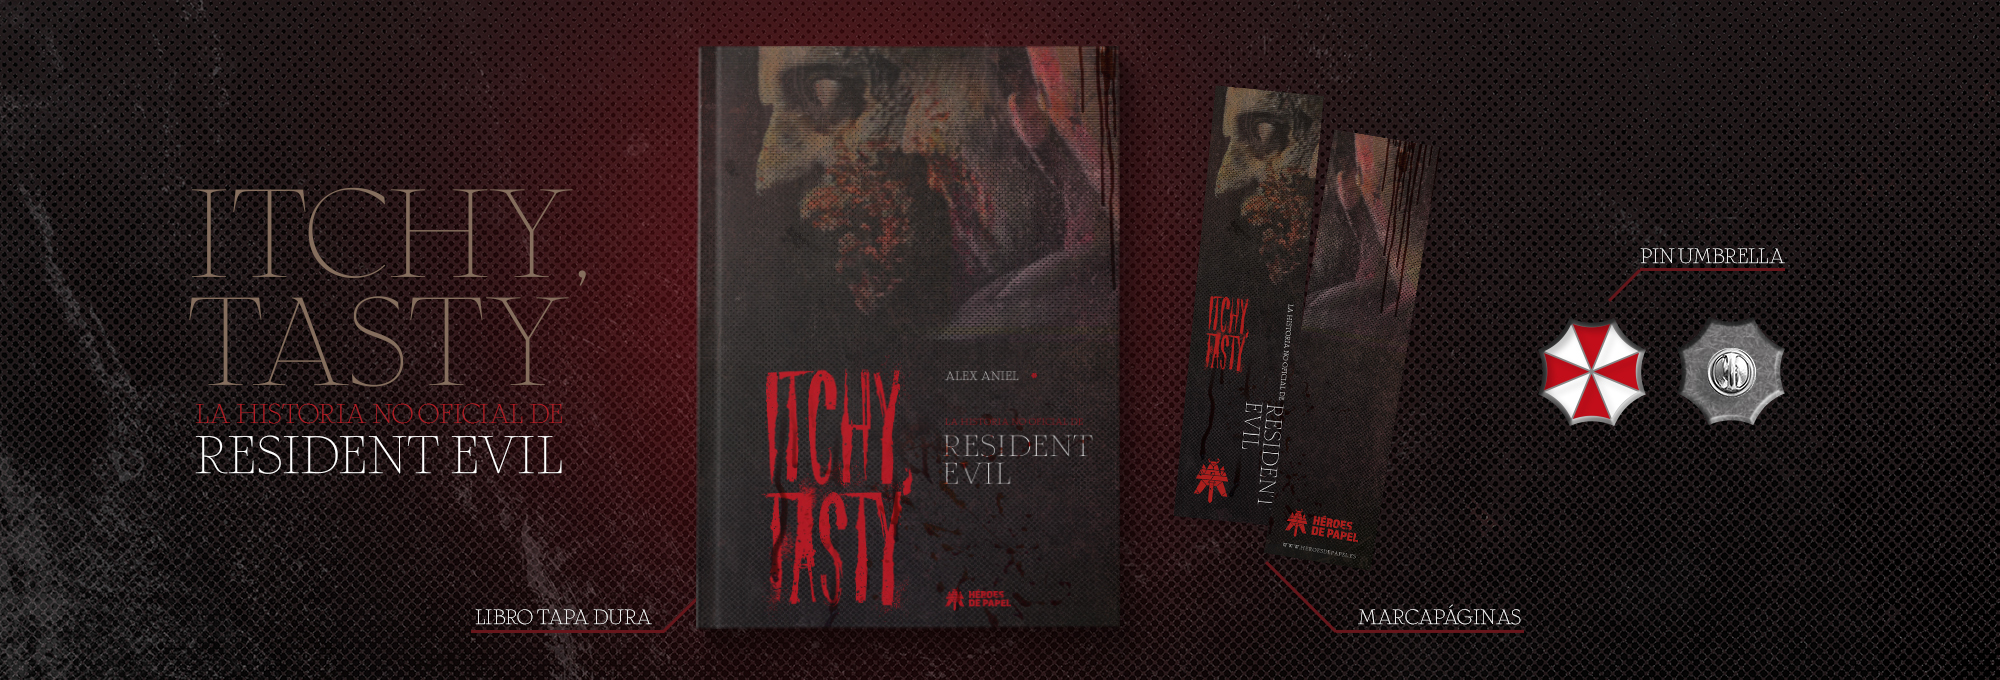 Itchy, Tasty La historia no oficial de Resident Evil